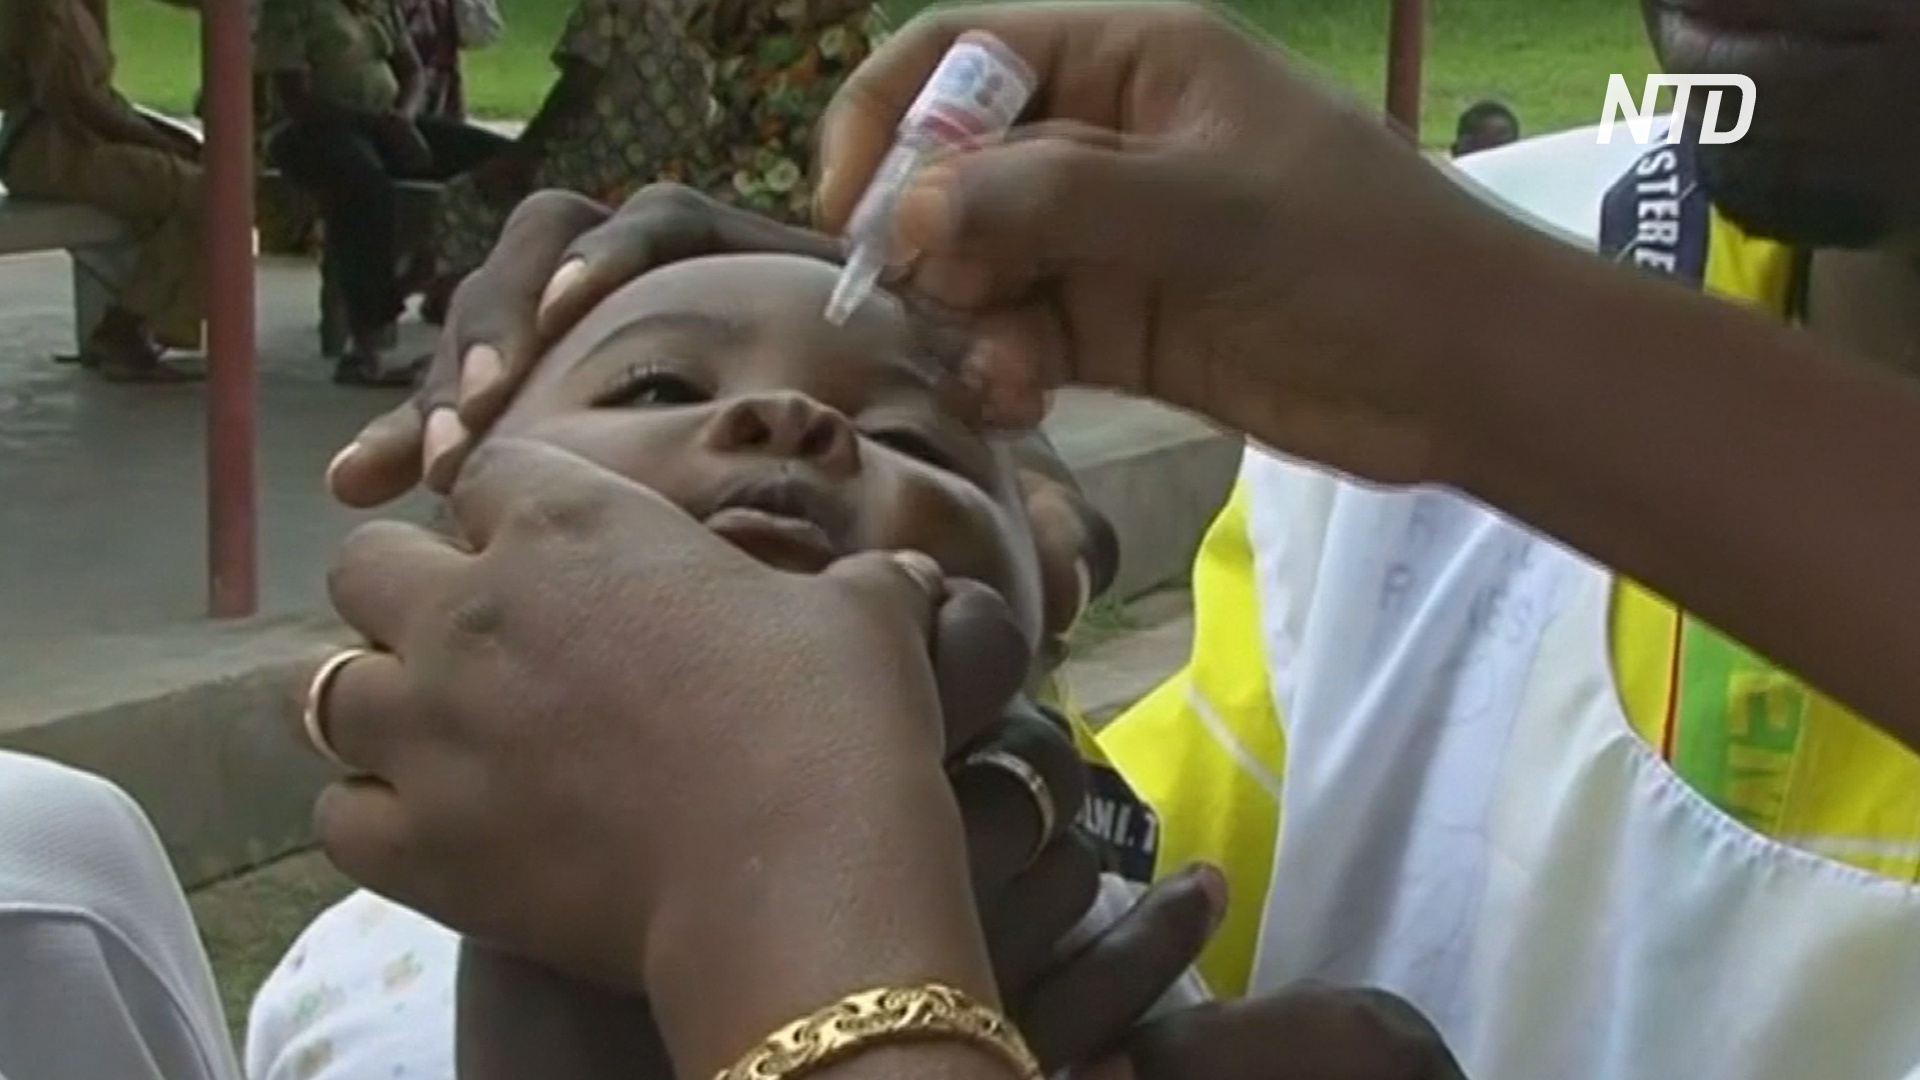 Нигерию хотят объявить свободной от полиомиелита